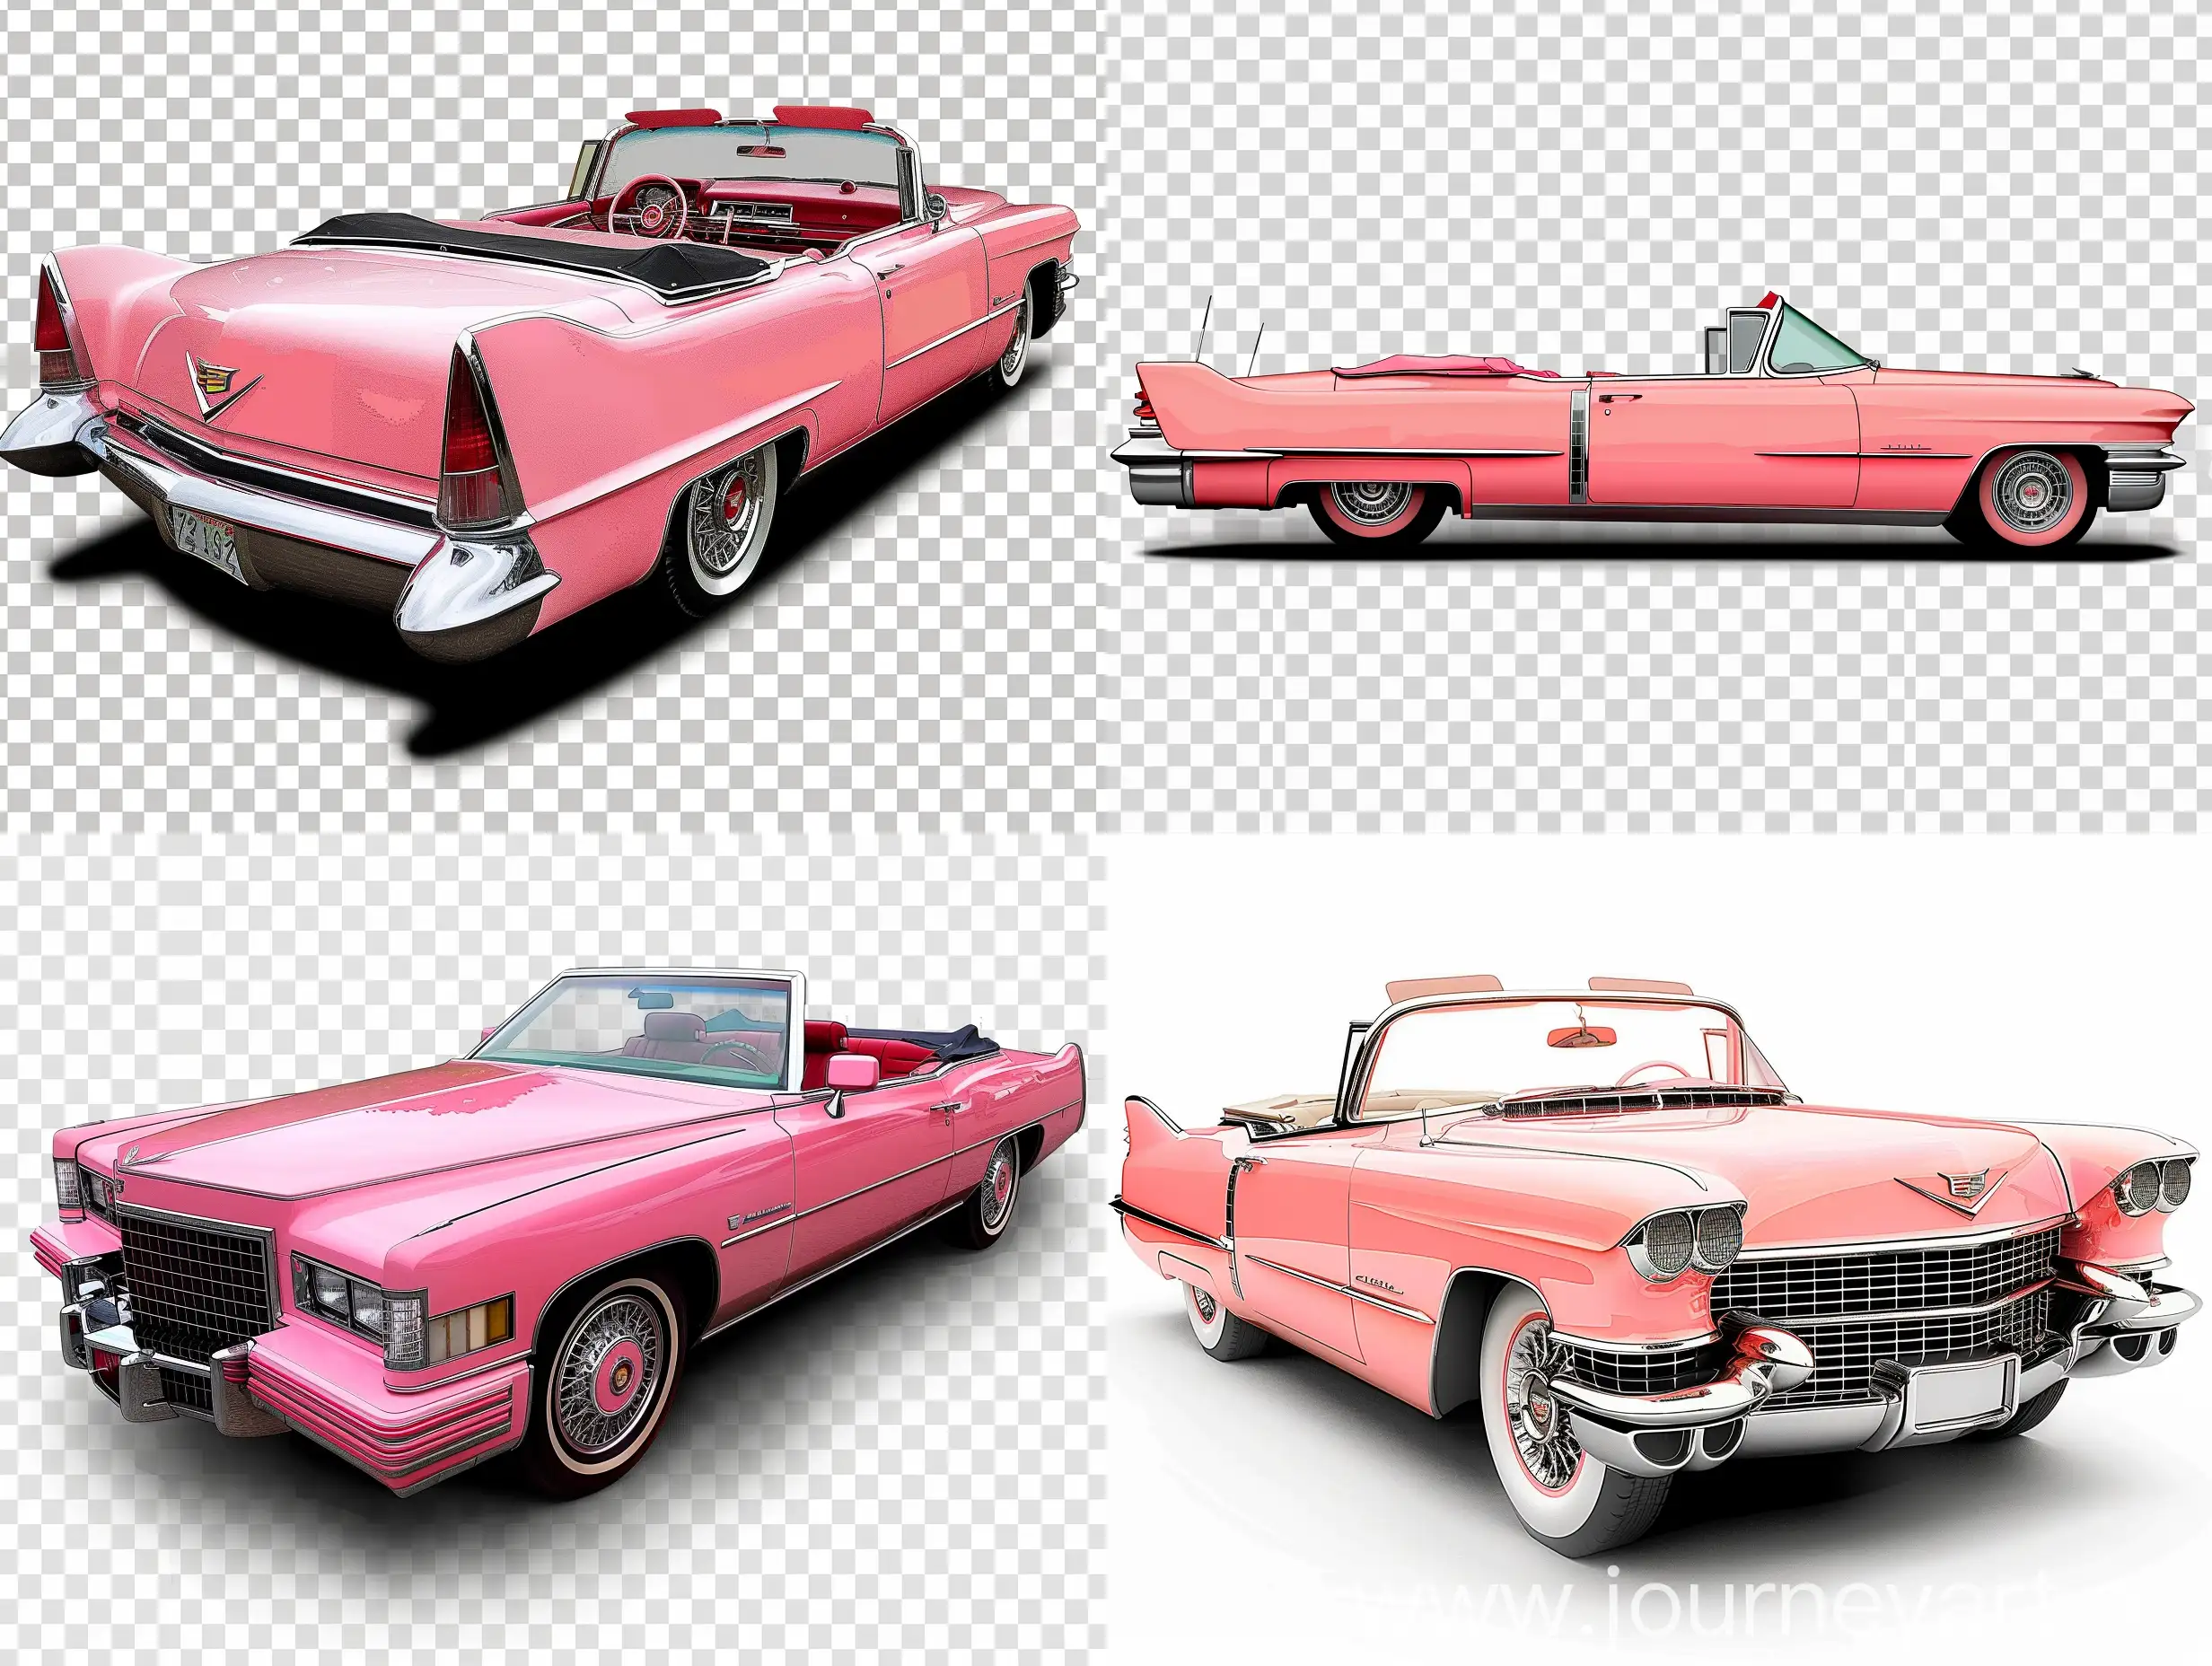 Цветной рисунок: автомобиль Кадиллак кабриолет розового цвета. Стикер на прозрачном фоне для распечатки на принтере.